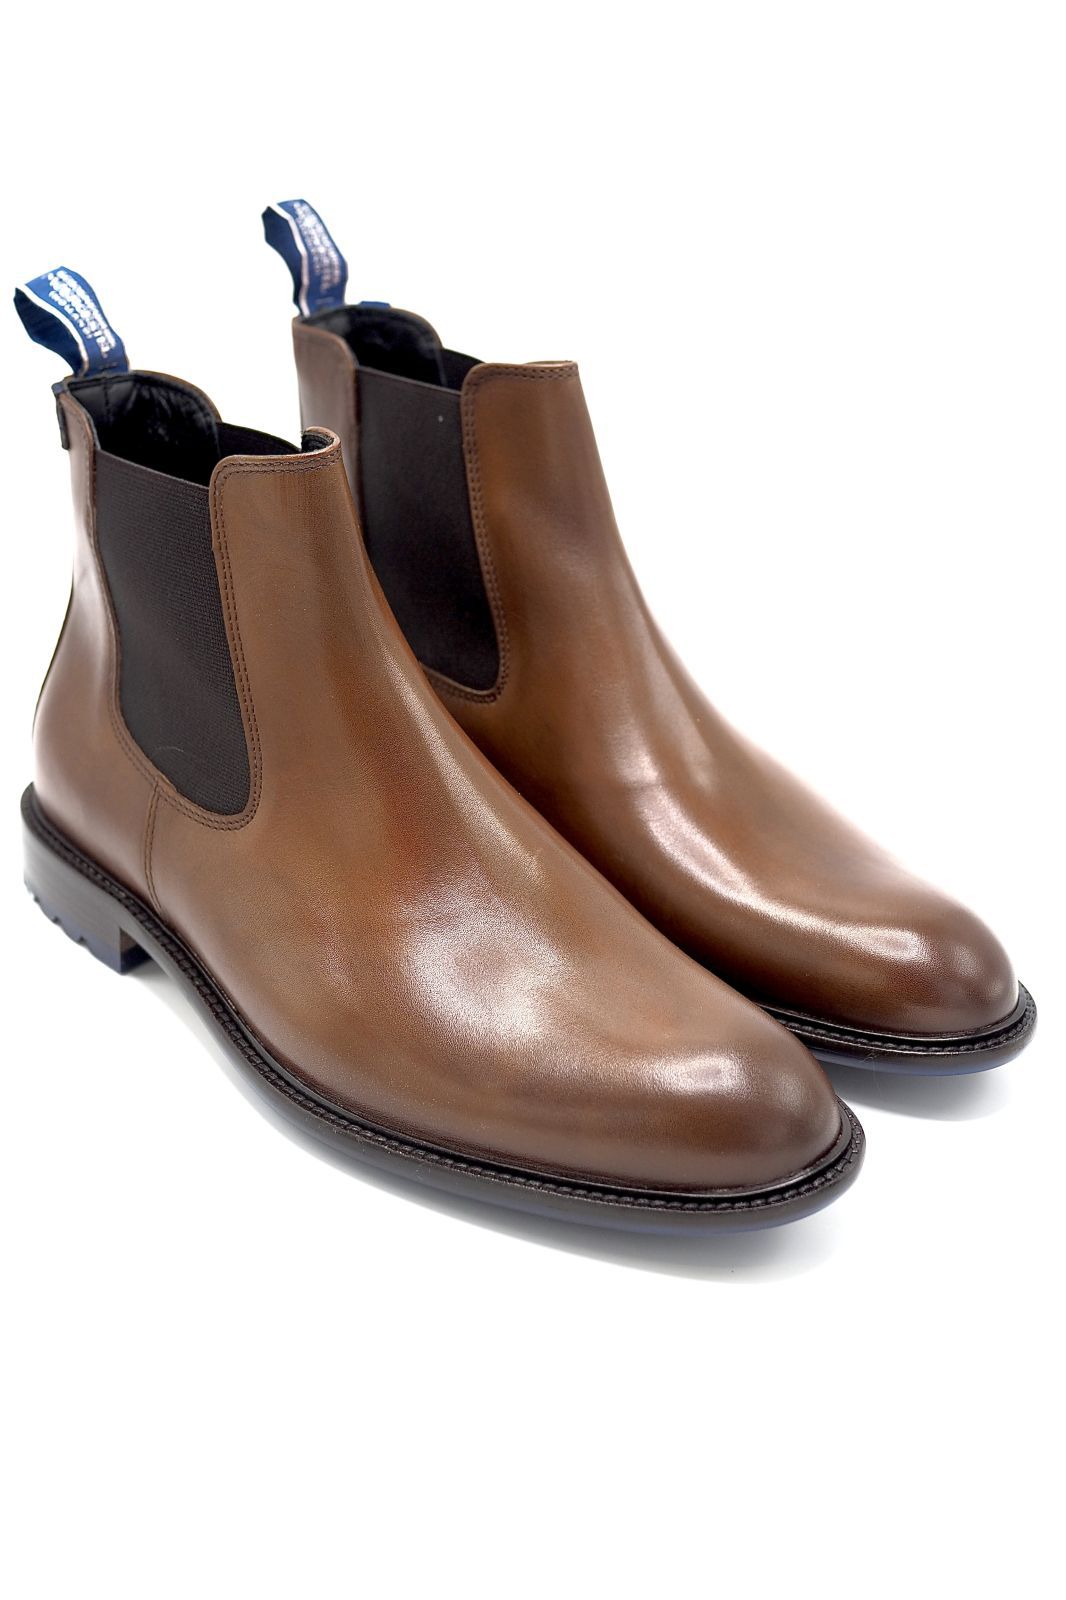 Floris Van Bommel Homme boots Naturel hommes (FVB-Boots Chelsea  - 10902/35 boots élastiques cogn) - Marine | Much more than shoes